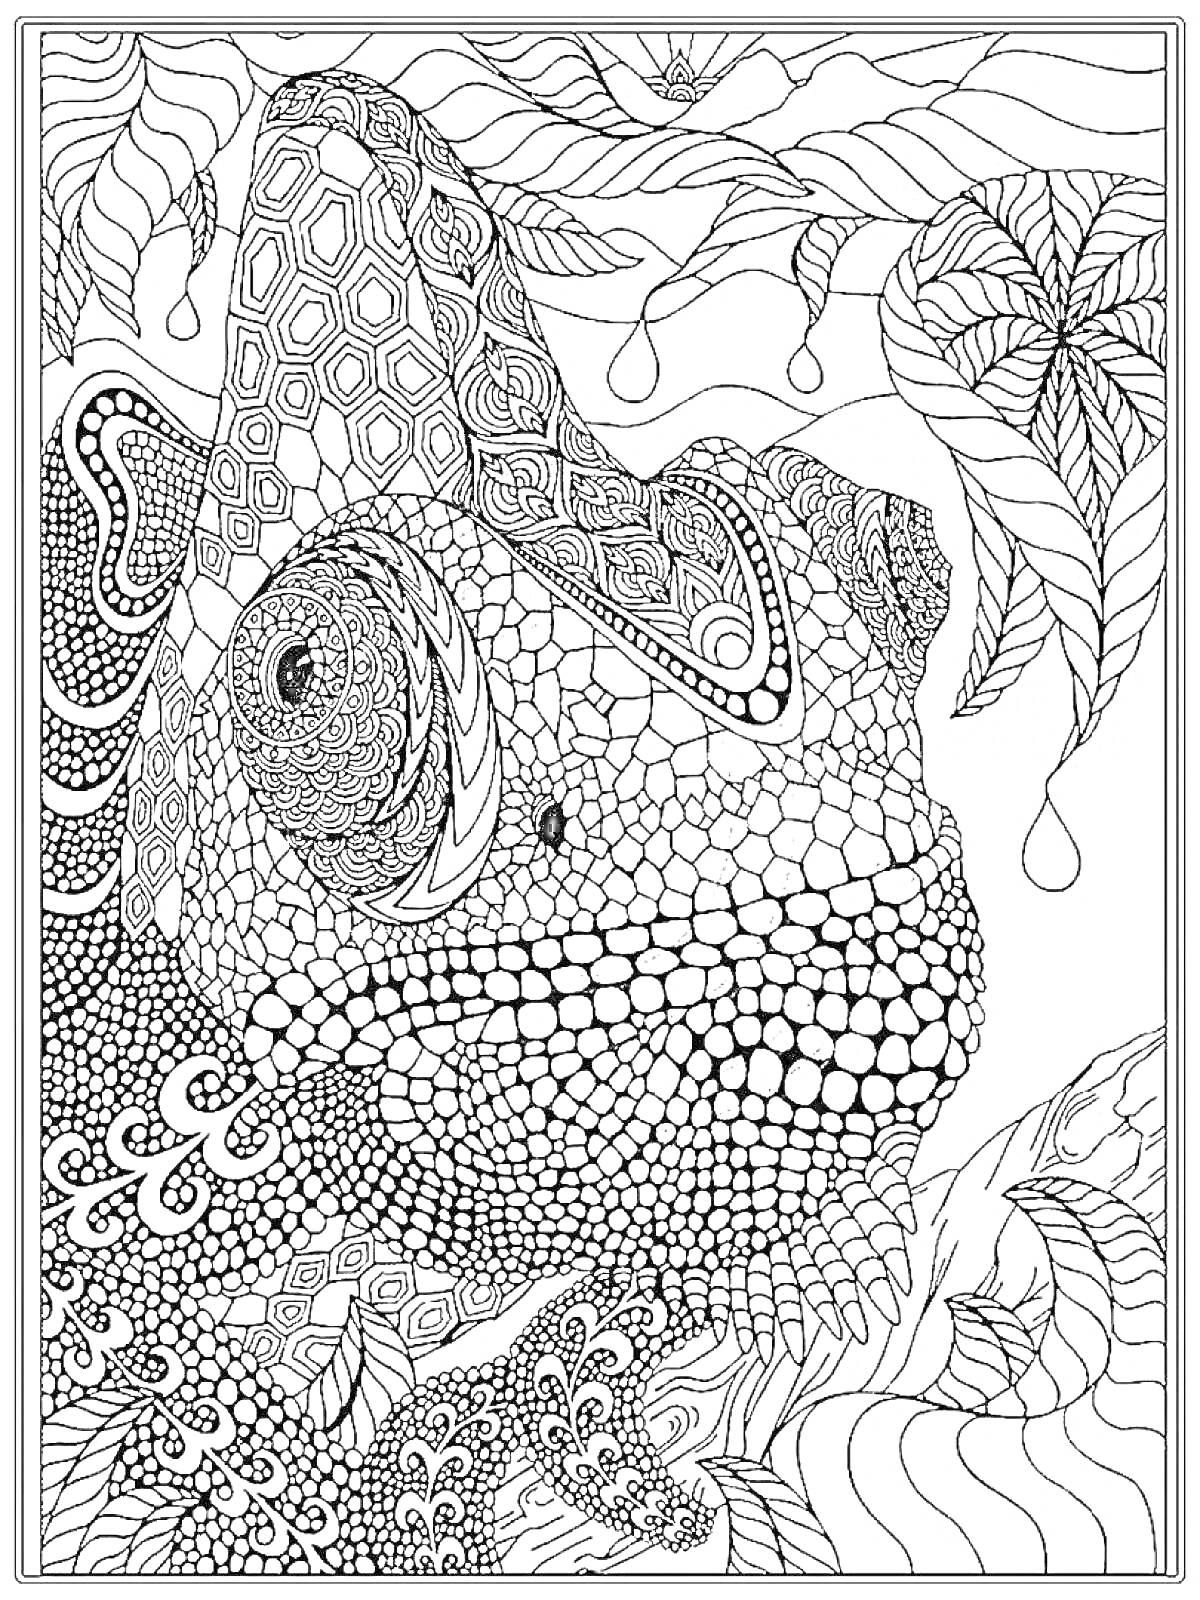 Раскраска Хамелеон в джунглях с узорчатыми листьями и геометрическими фигурами